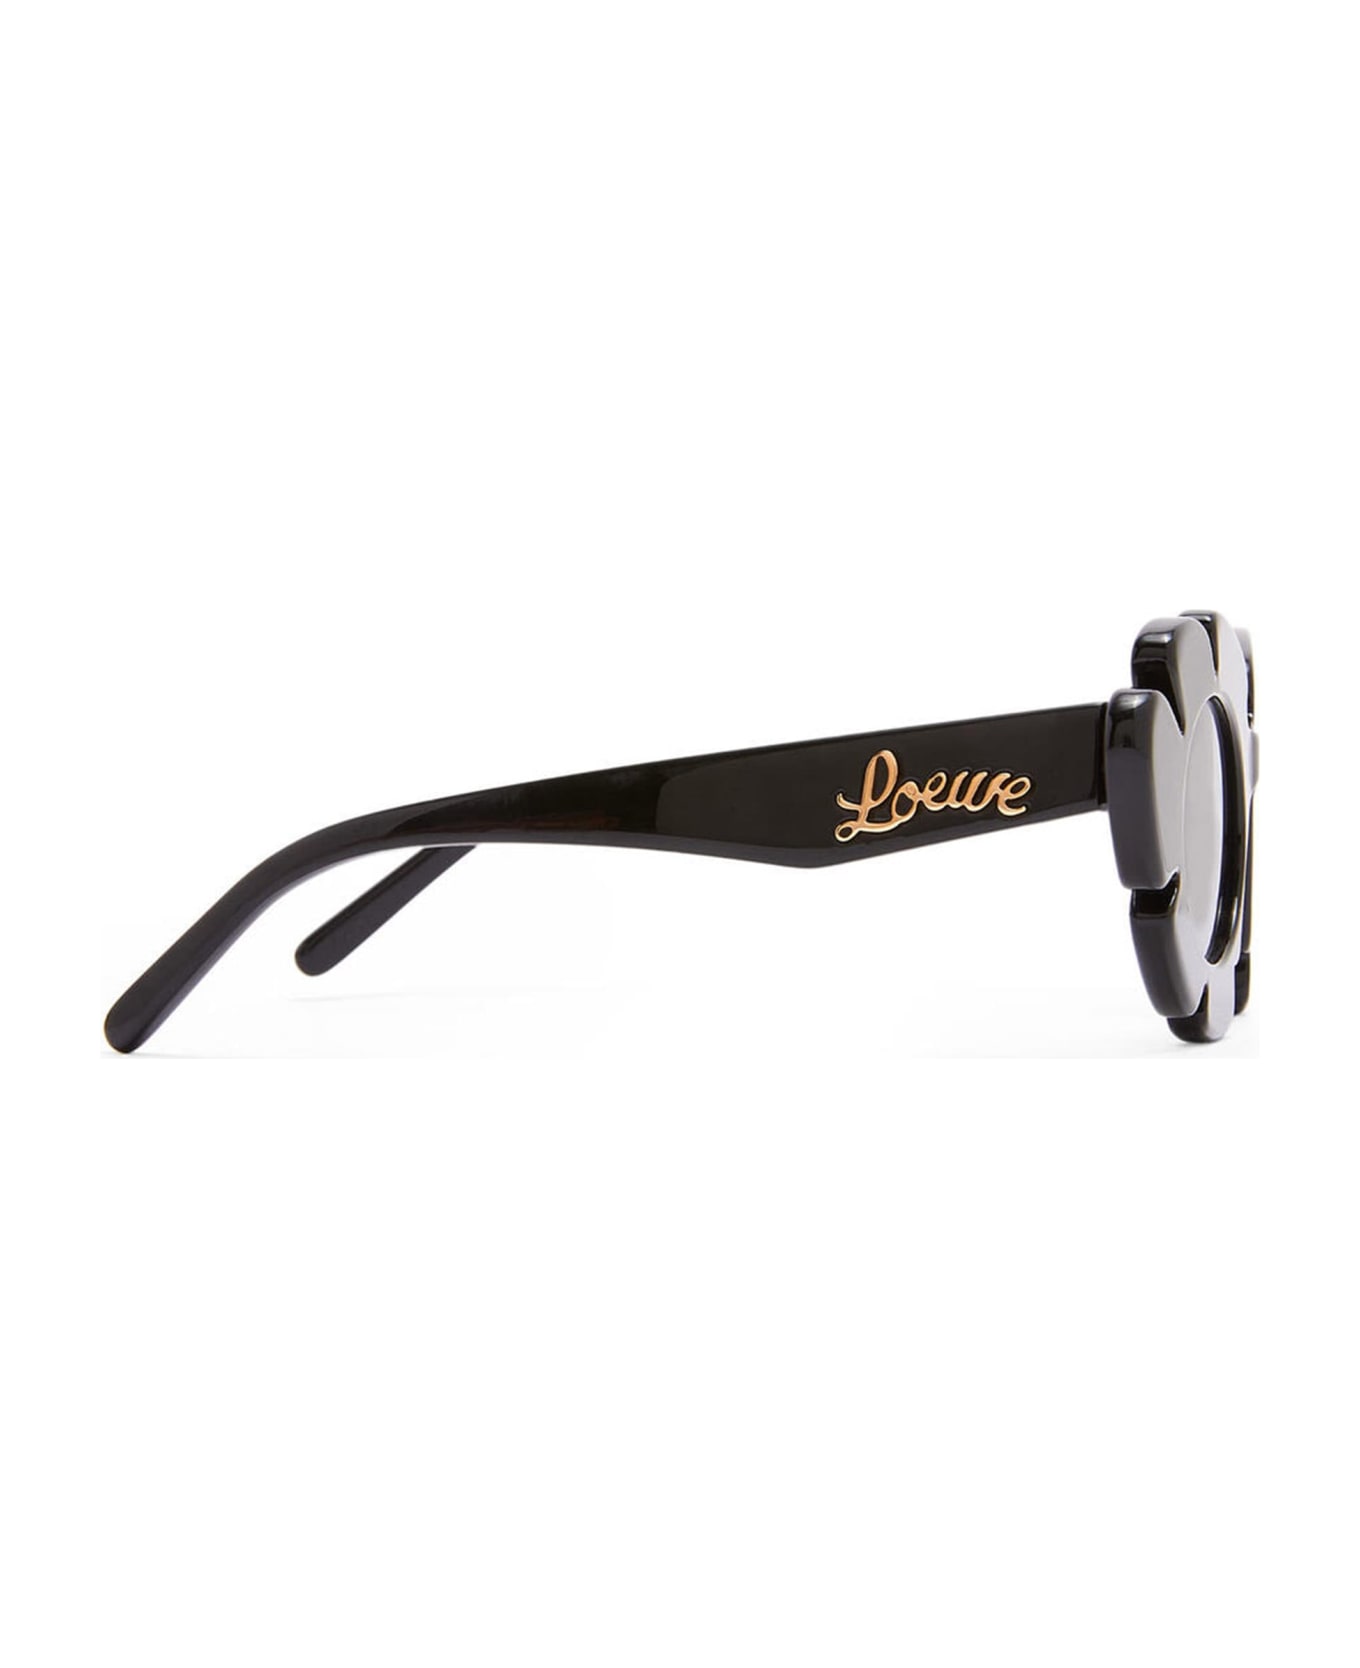 Loewe Lw40088u - Black Sunglasses - Black